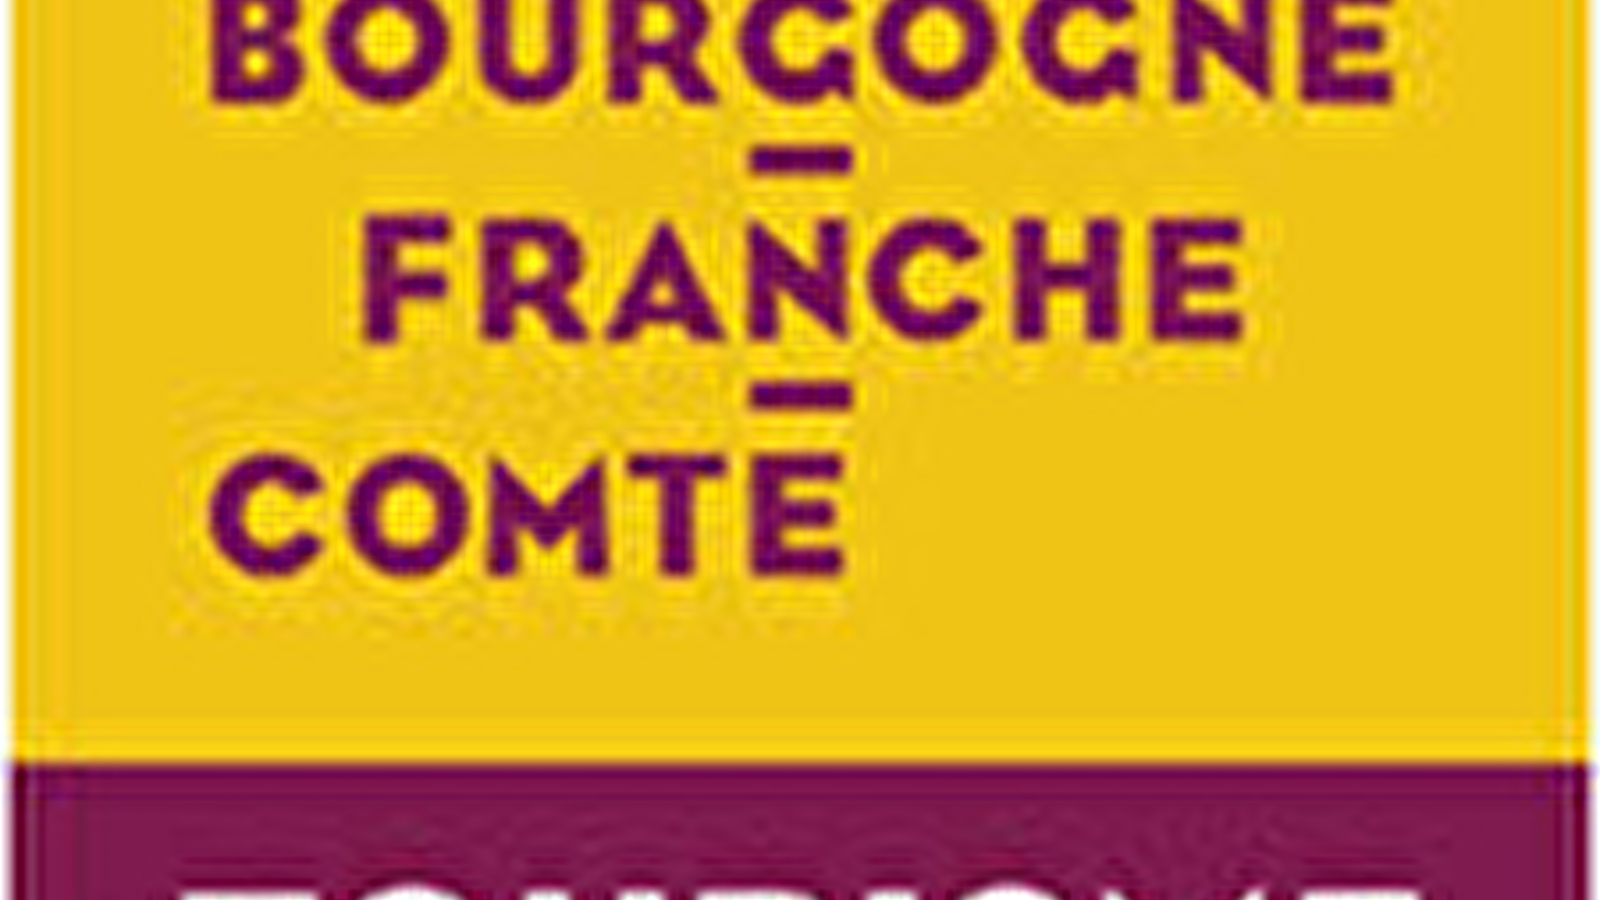 Bourgogne-Franche-Comté Tourisme